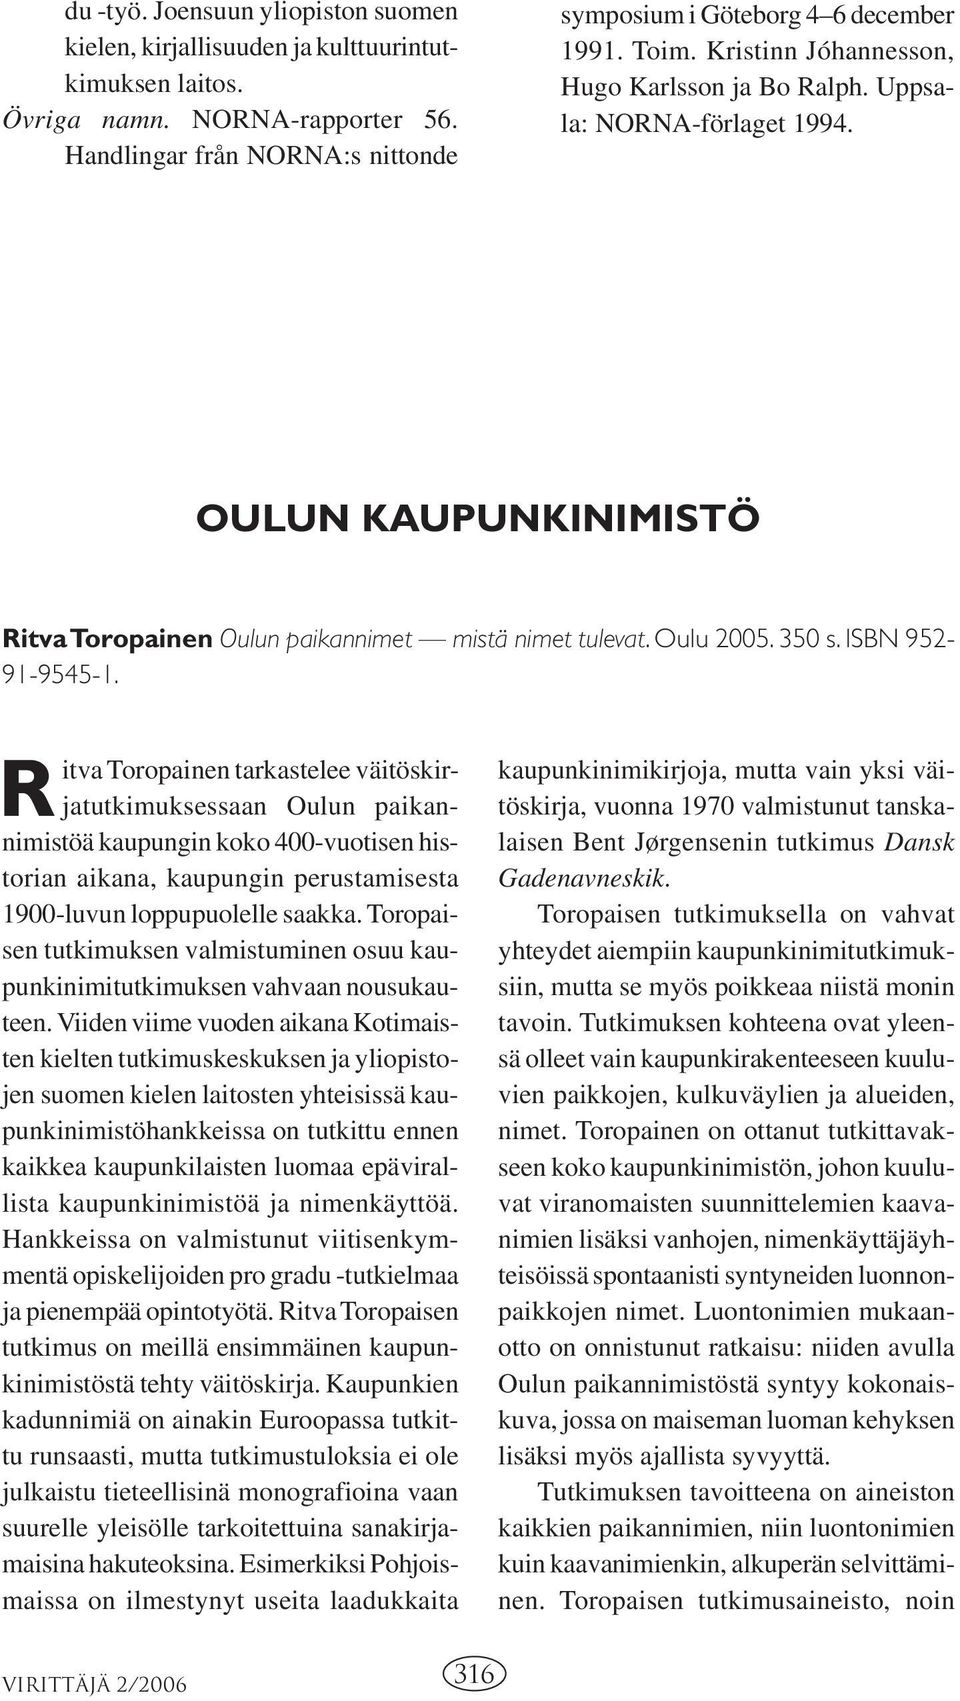 R itva Toropainen tarkastelee väitöskirjatutkimuksessaan Oulun paikannimistöä kaupungin koko 400-vuotisen historian aikana, kaupungin perustamisesta 1900-luvun loppupuolelle saakka.